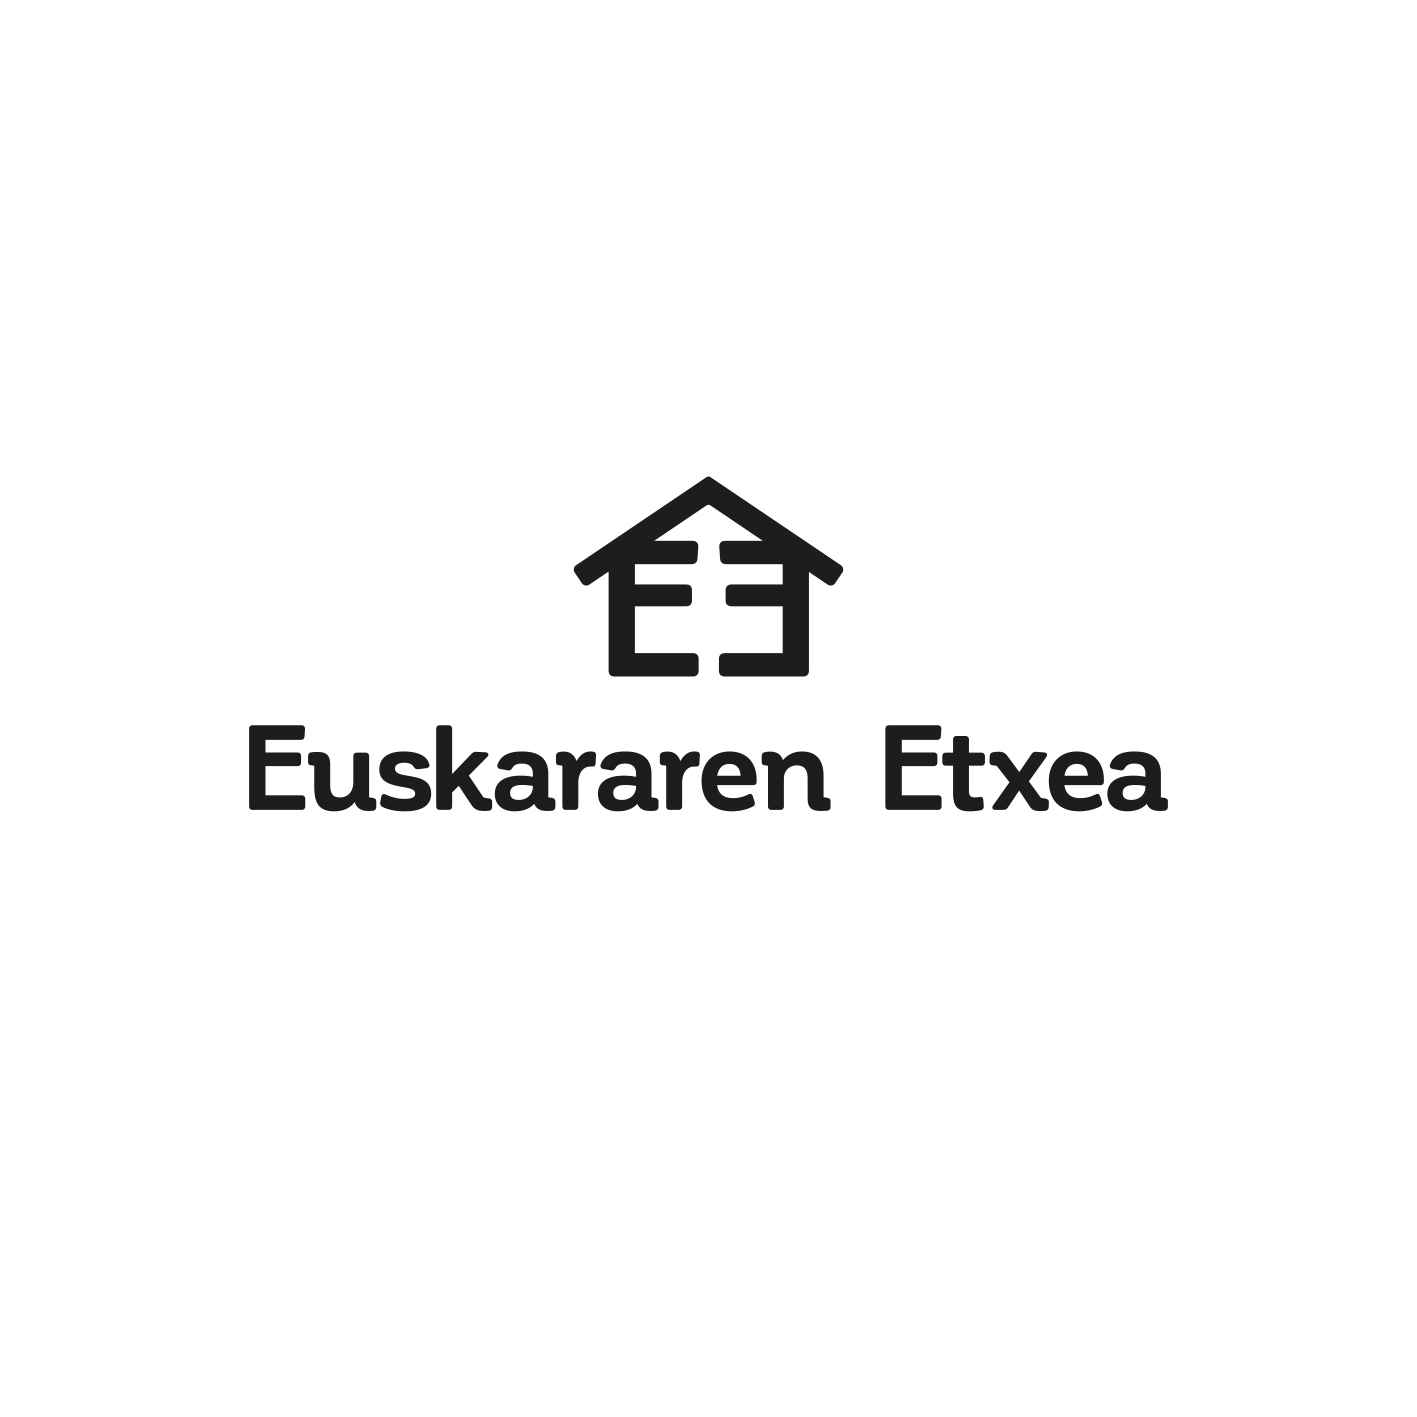 EUSKARAREN ETXEA by Asier Iturralde - Creative Work